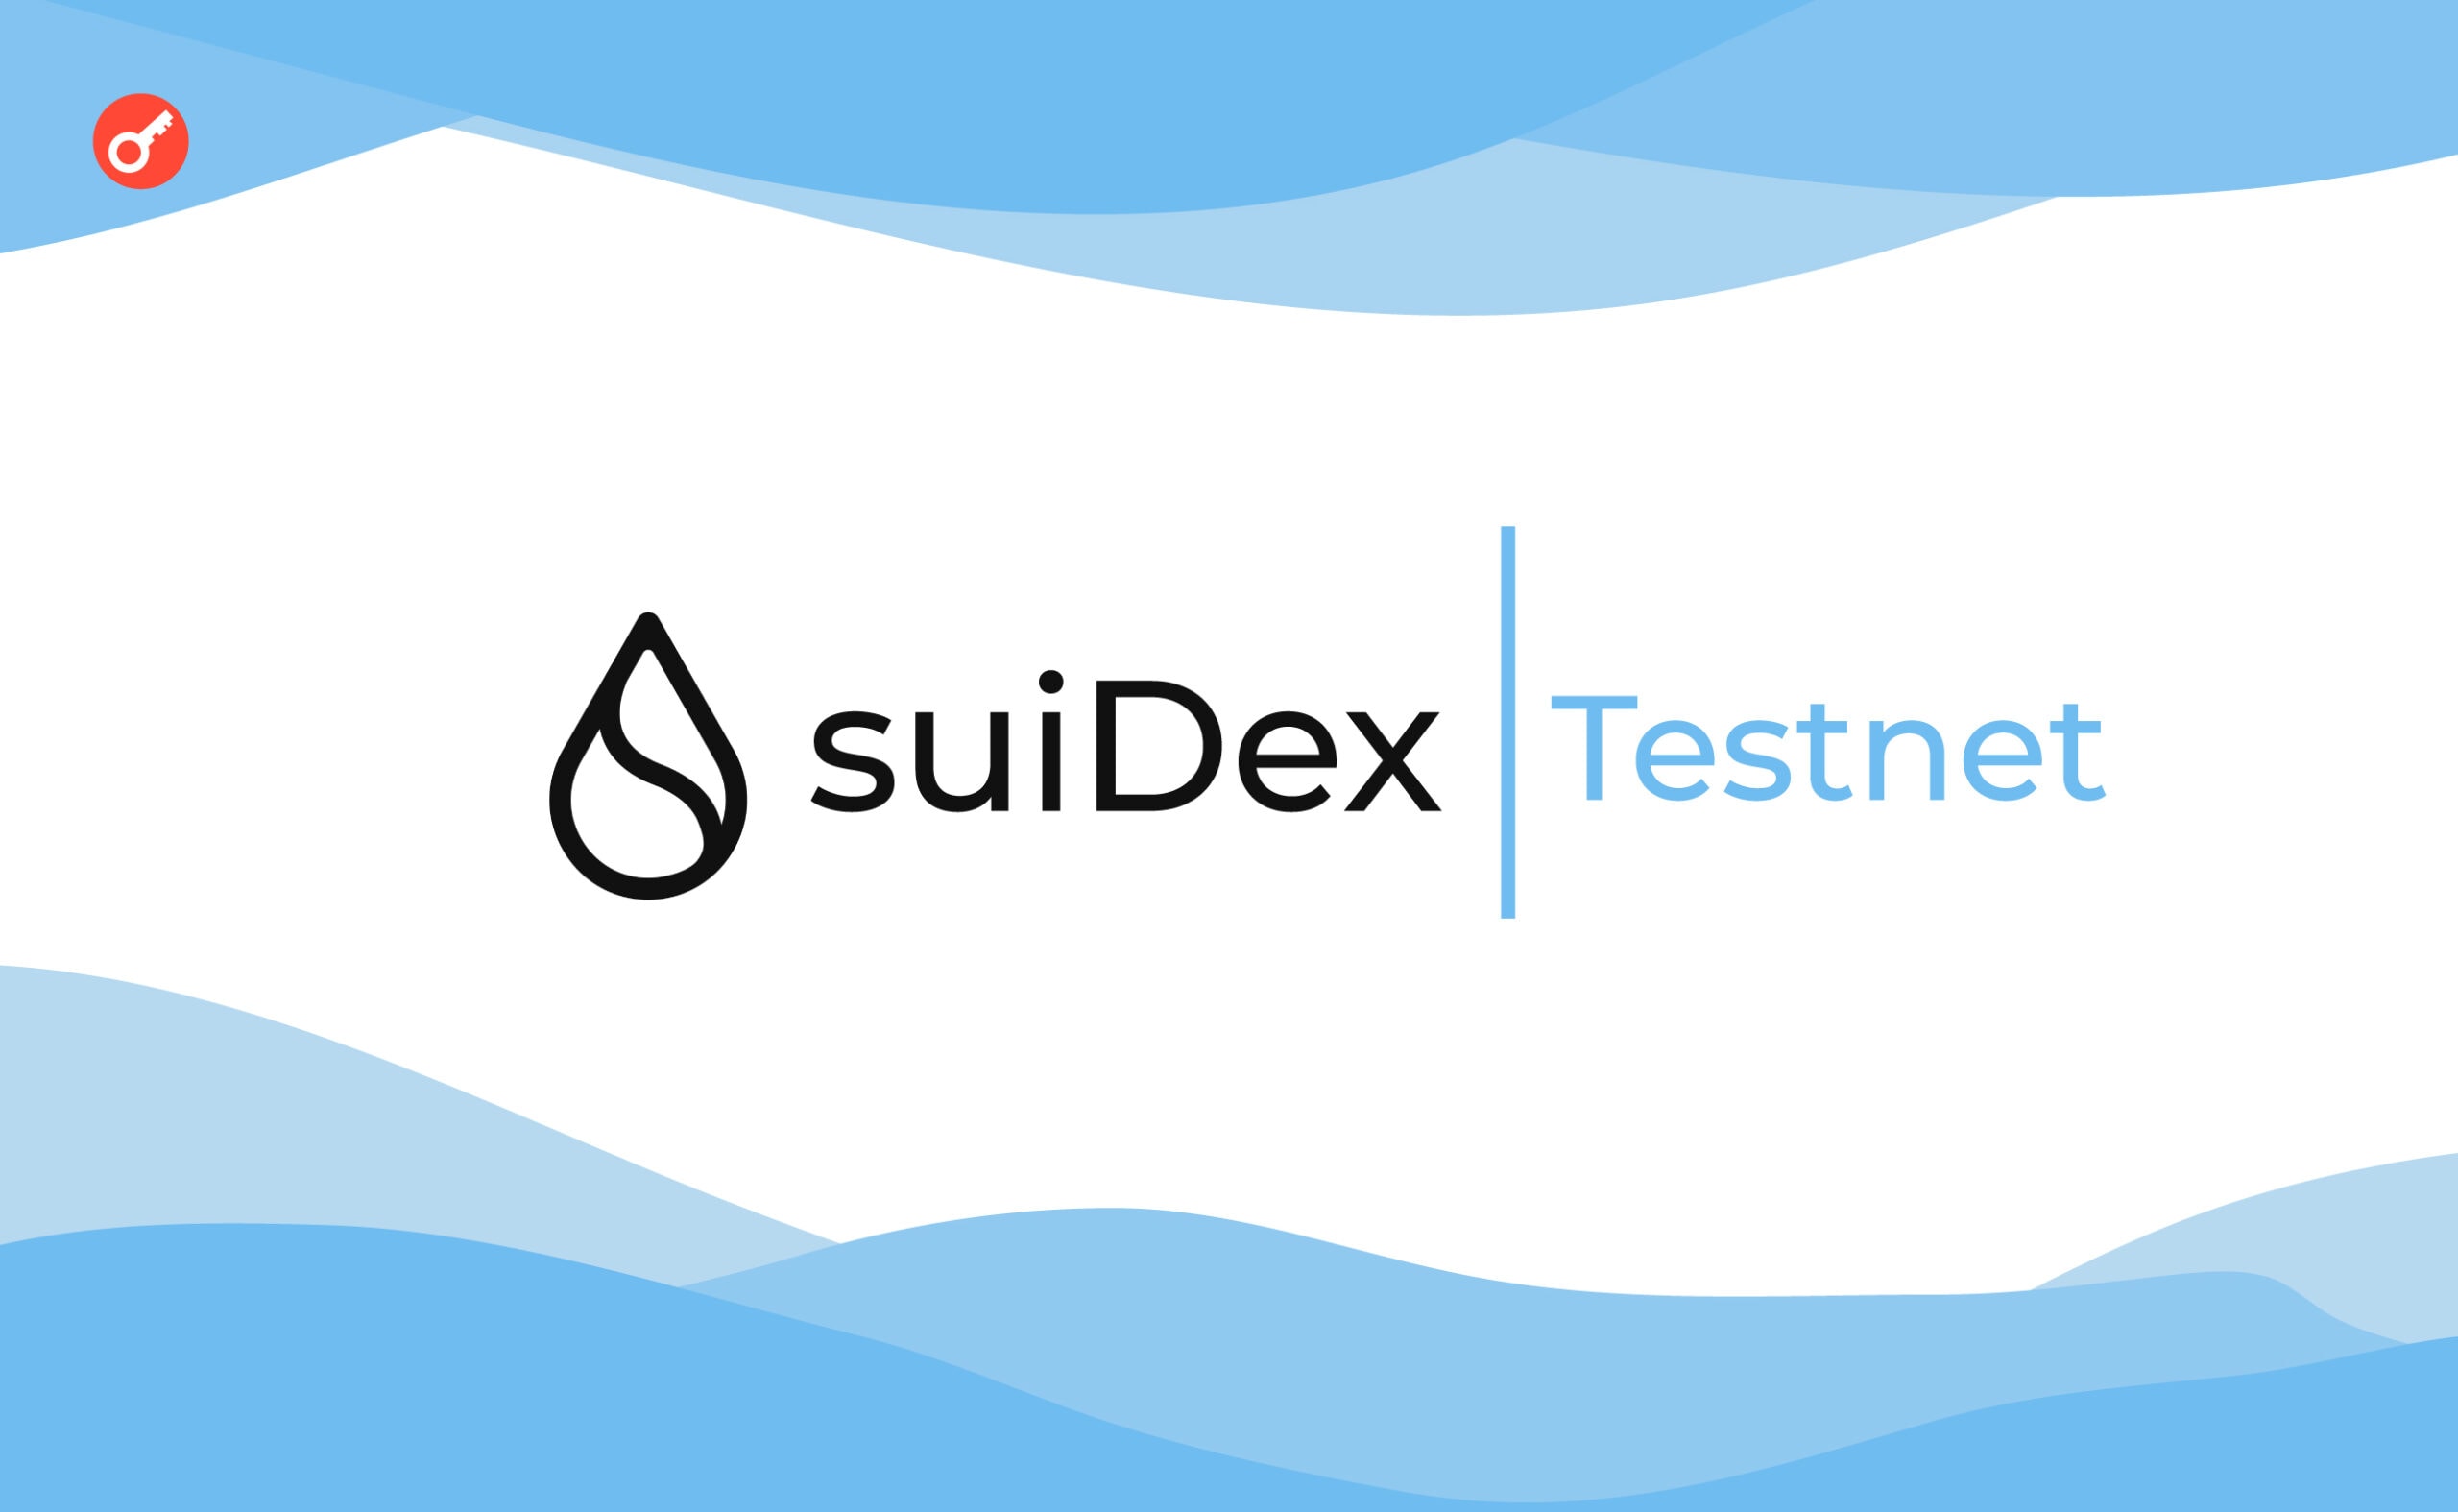 SuiDex аирдроп: инструкция по прохождению тестнета. Заглавный коллаж статьи.